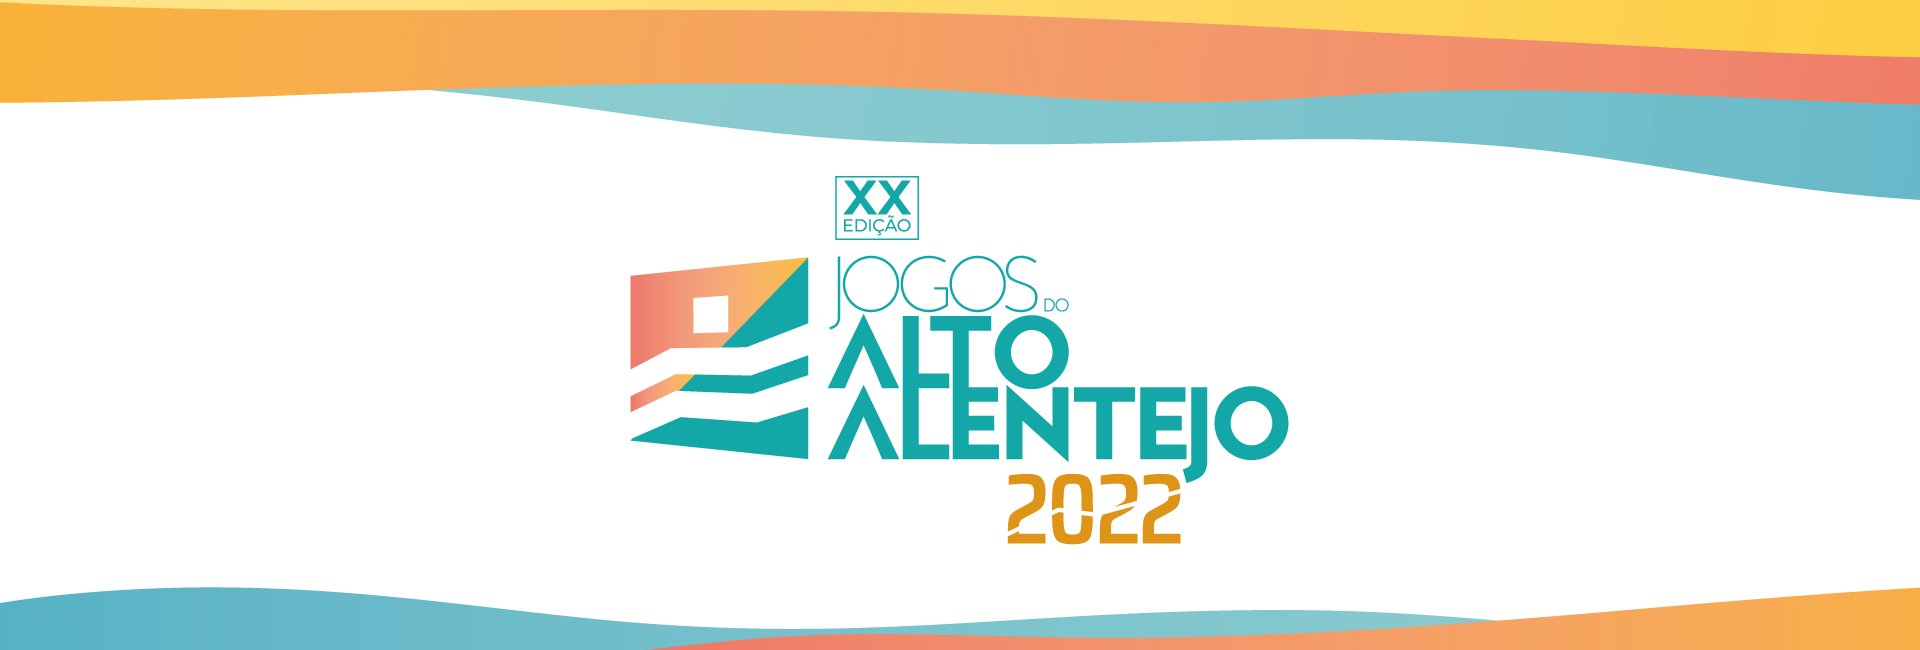 (Português) XX Edição dos Jogos do Alto Alentejo 2022